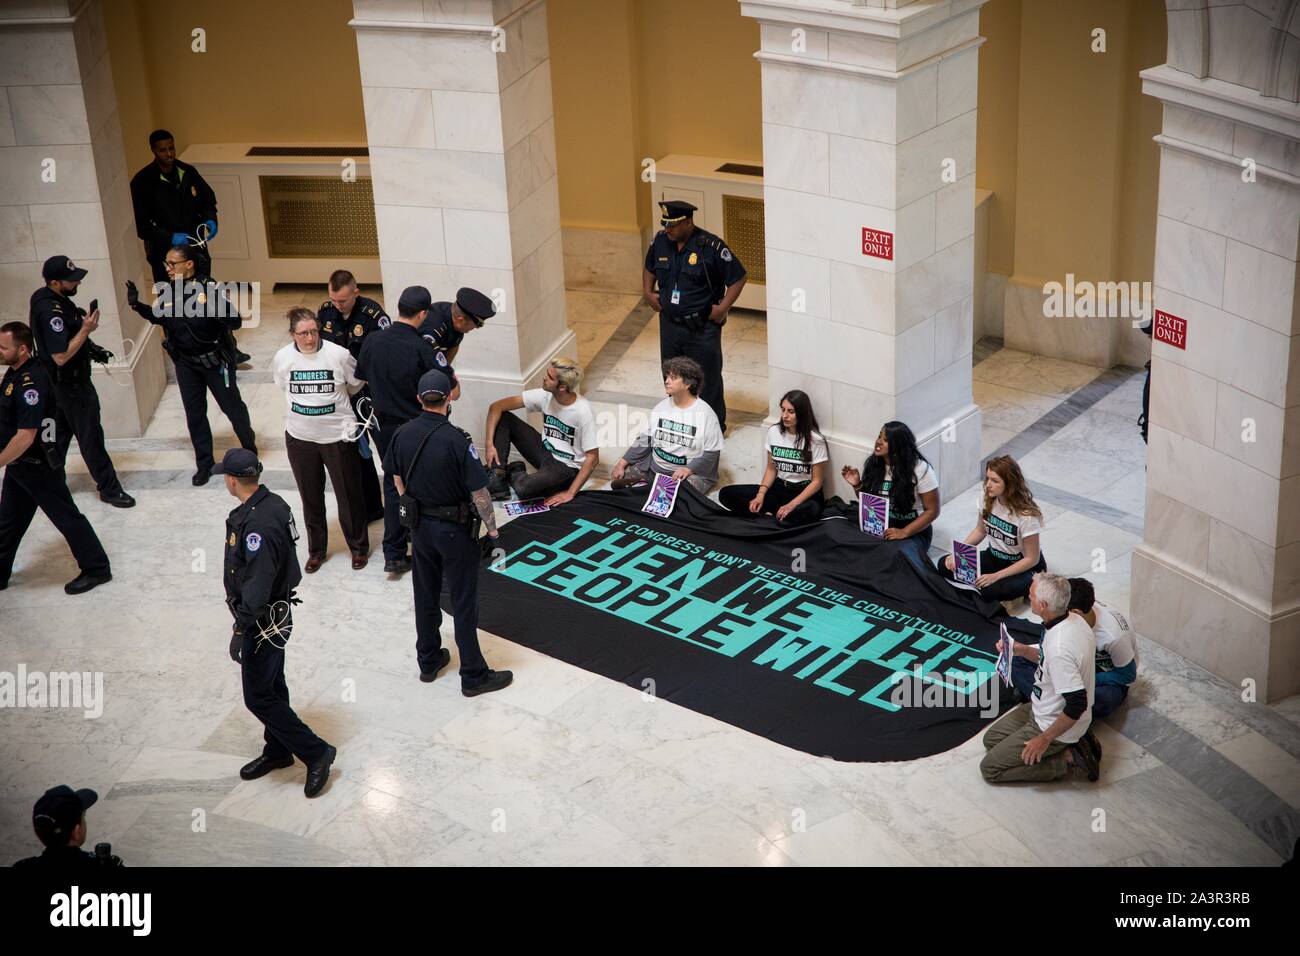 Mai 14, 2019 Mitglieder der Aktivist Gruppe durch das Volk das Capitol Rotunde im Protest der Mangel an congressionlal Aktion auf Amtsenthebung besetzen. Washington, DC, USA. Stockfoto